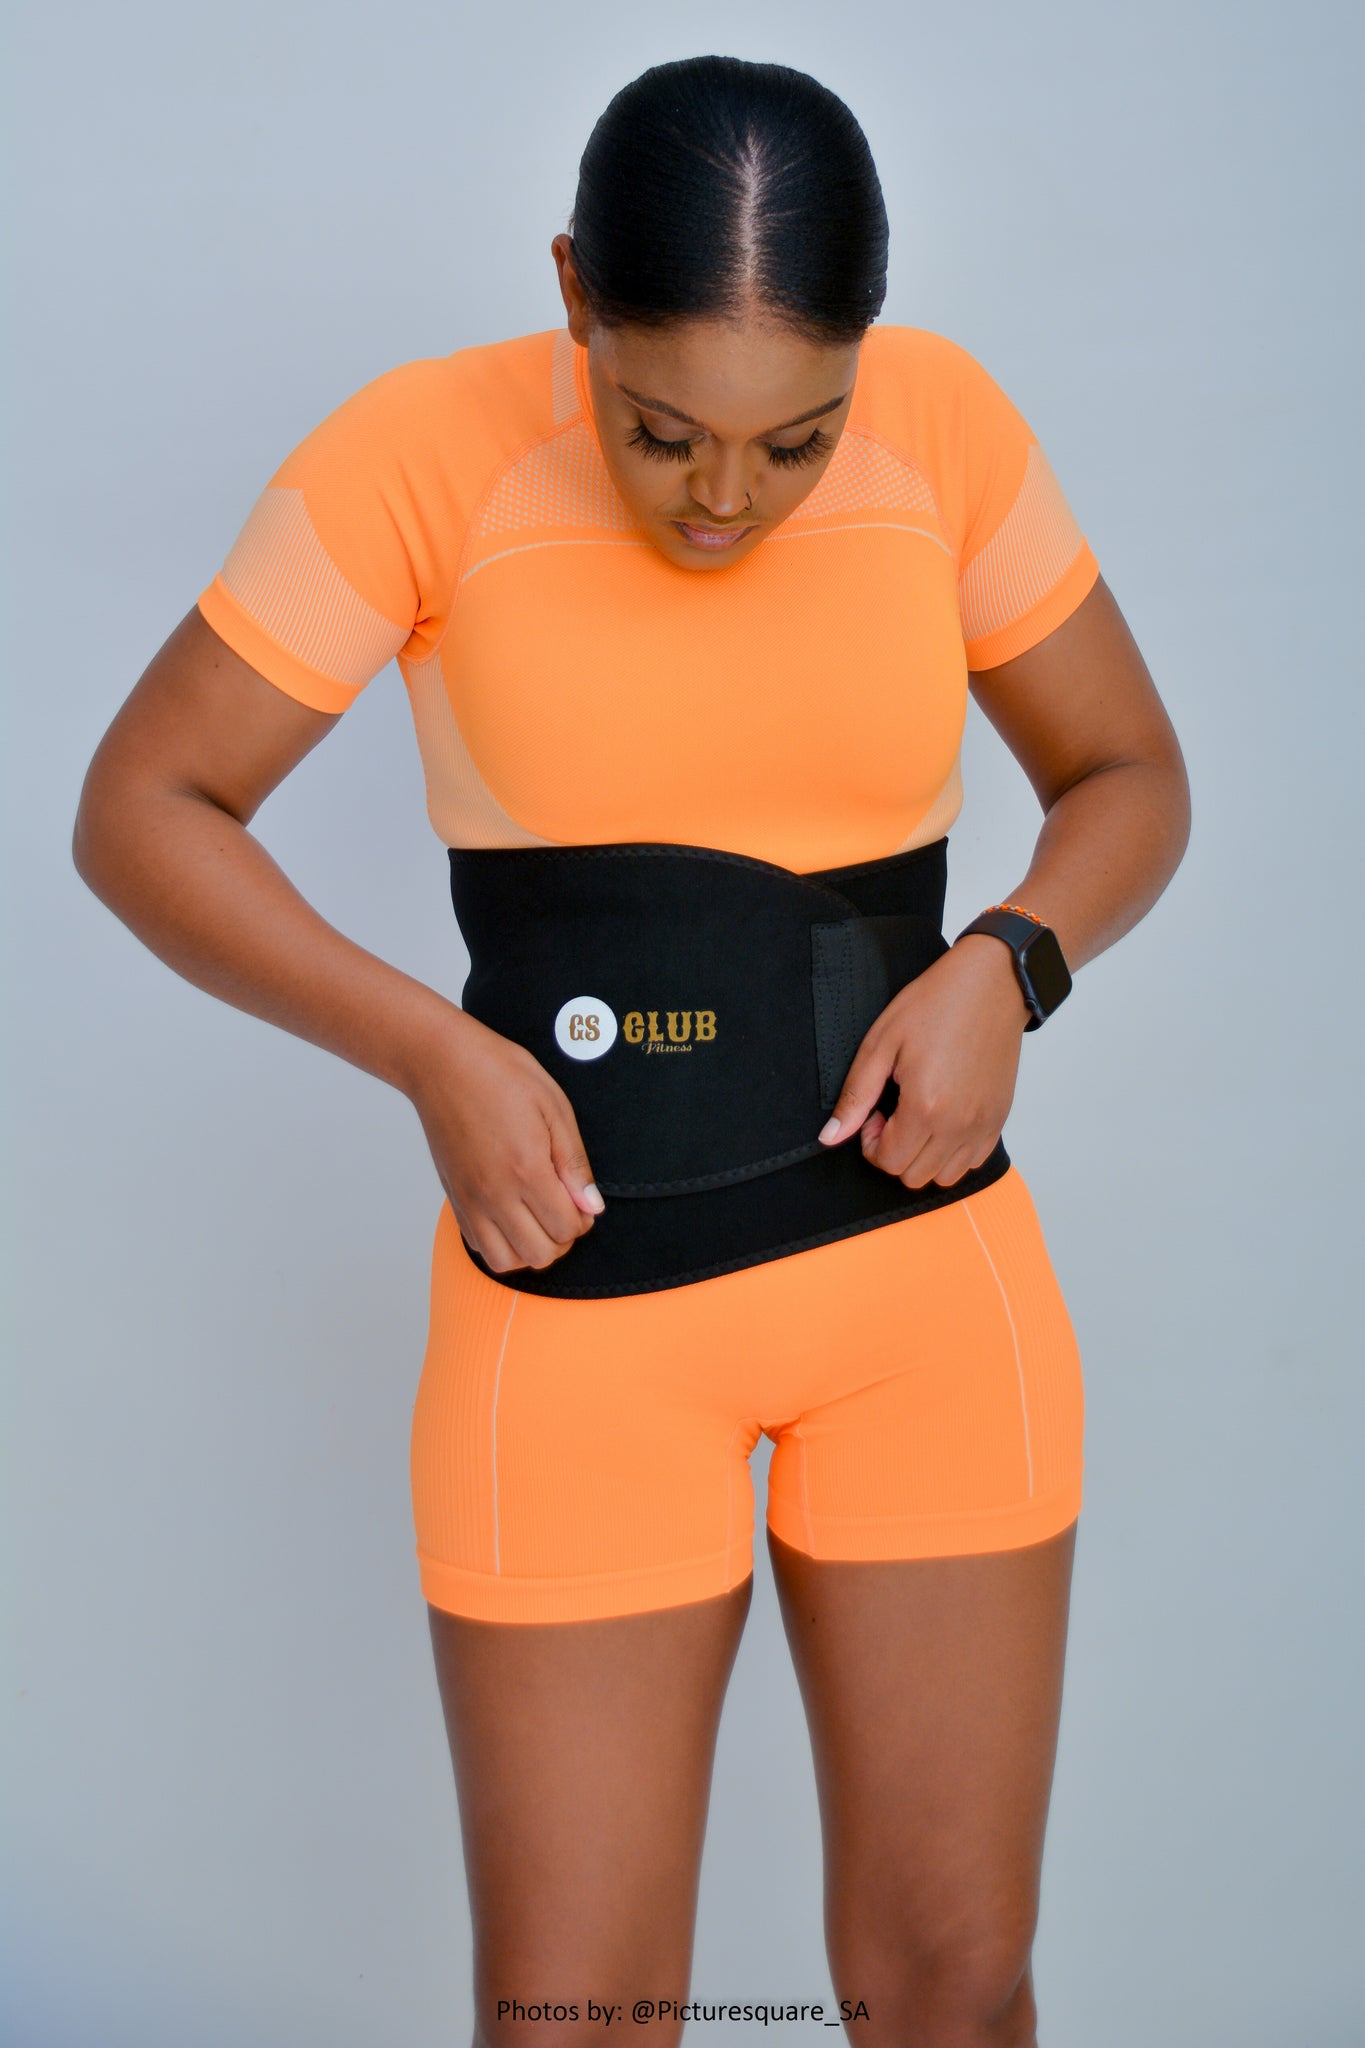 Sweat Belt for Men & Women – THEGSCLUB